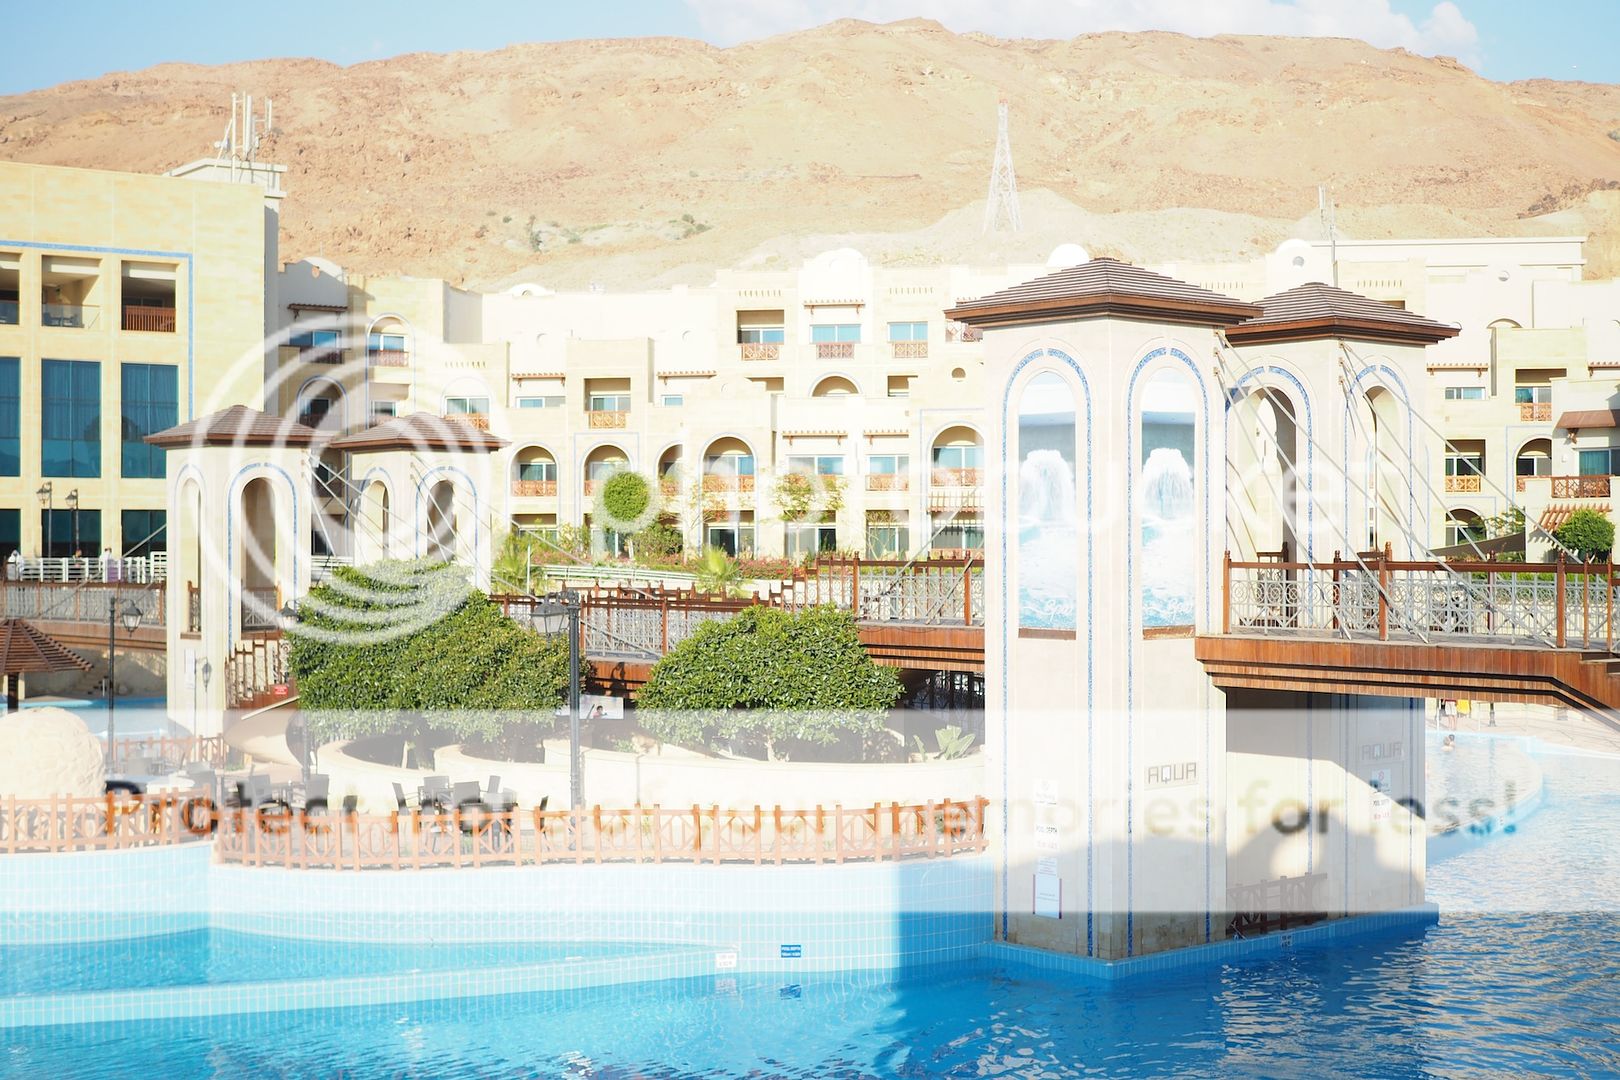  photo hoteles mar muerto jordania jordan dead sea resorts.jpeg